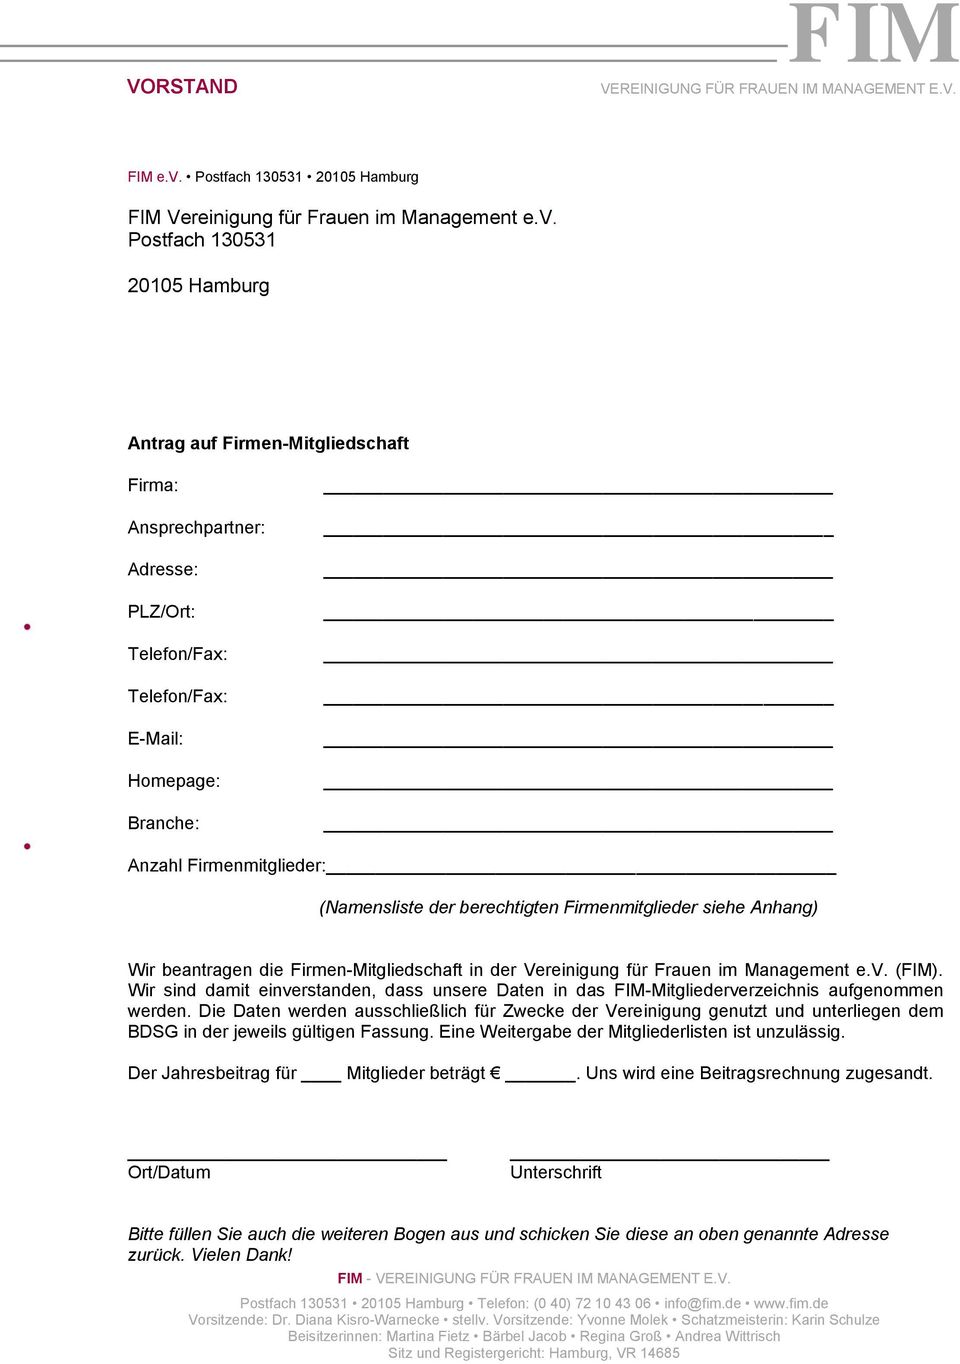 Postfach 130531 20105 Hamburg Antrag auf Firmen-Mitgliedschaft Firma: Ansprechpartner: Adresse: PLZ/Ort: Telefon/Fax: Telefon/Fax: E-Mail: Homepage: Branche: Anzahl Firmenmitglieder: (Namensliste der